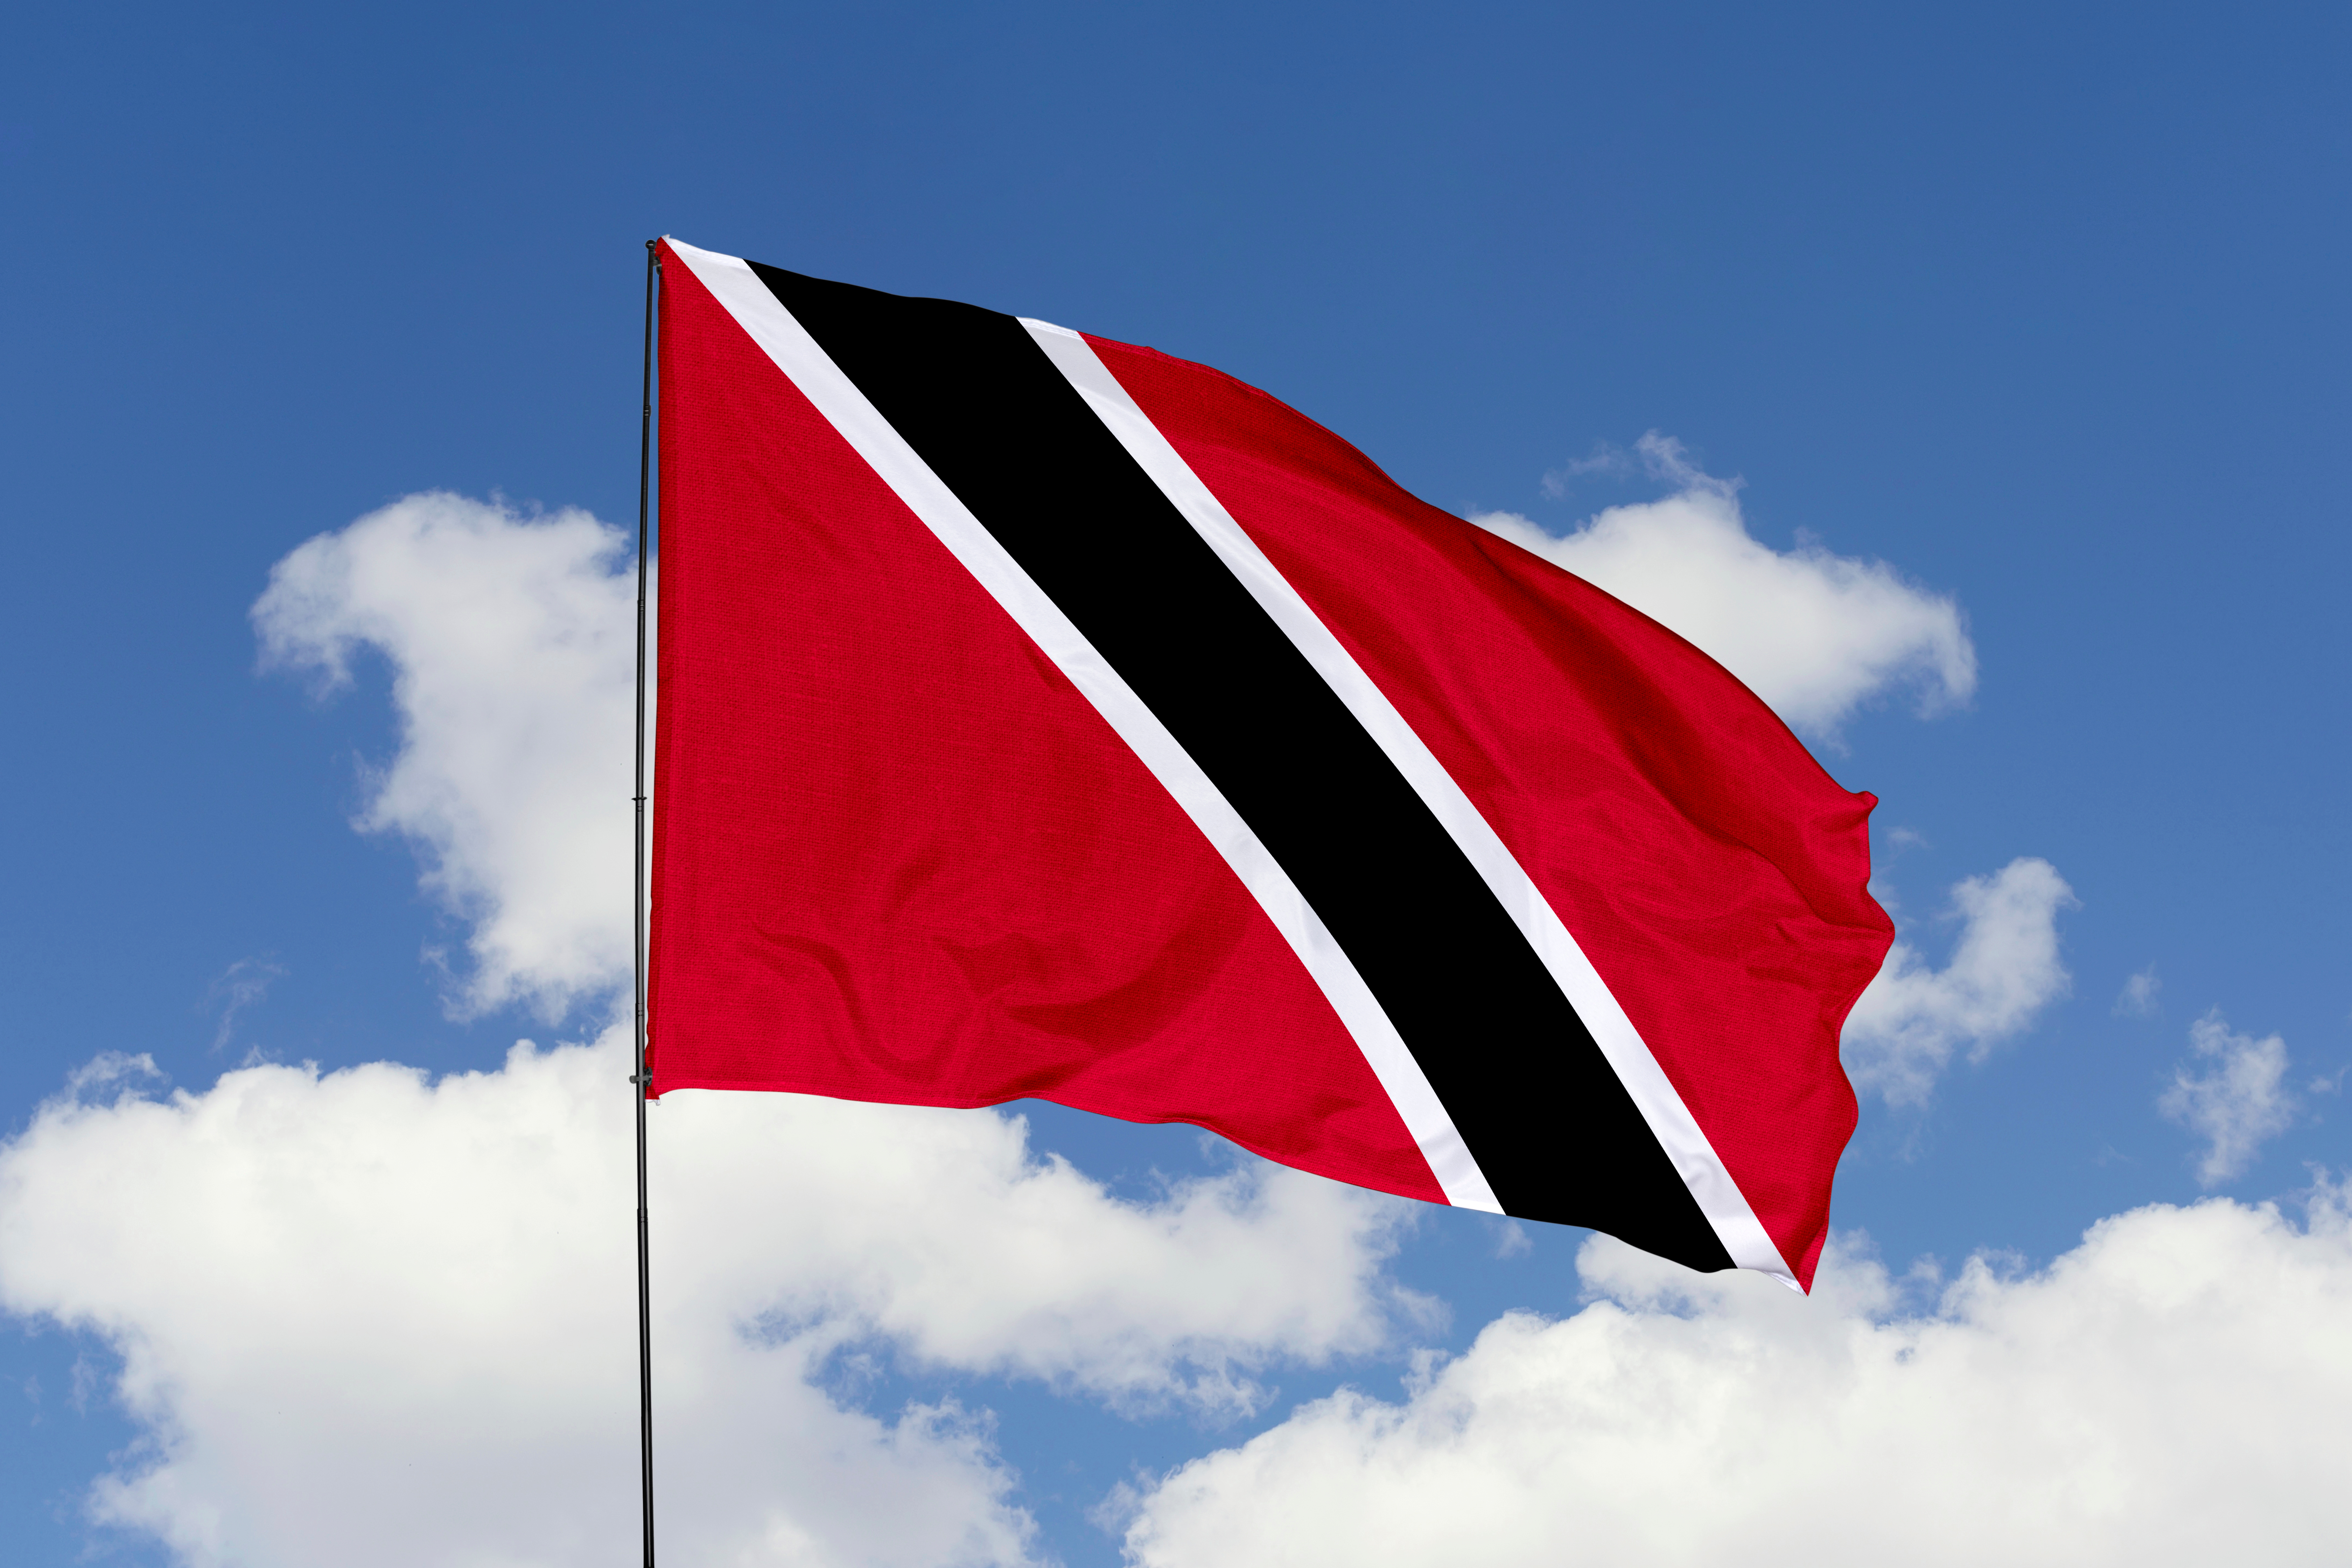     Trinité-et-Tobago reconnait officiellement l'Etat palestinien

